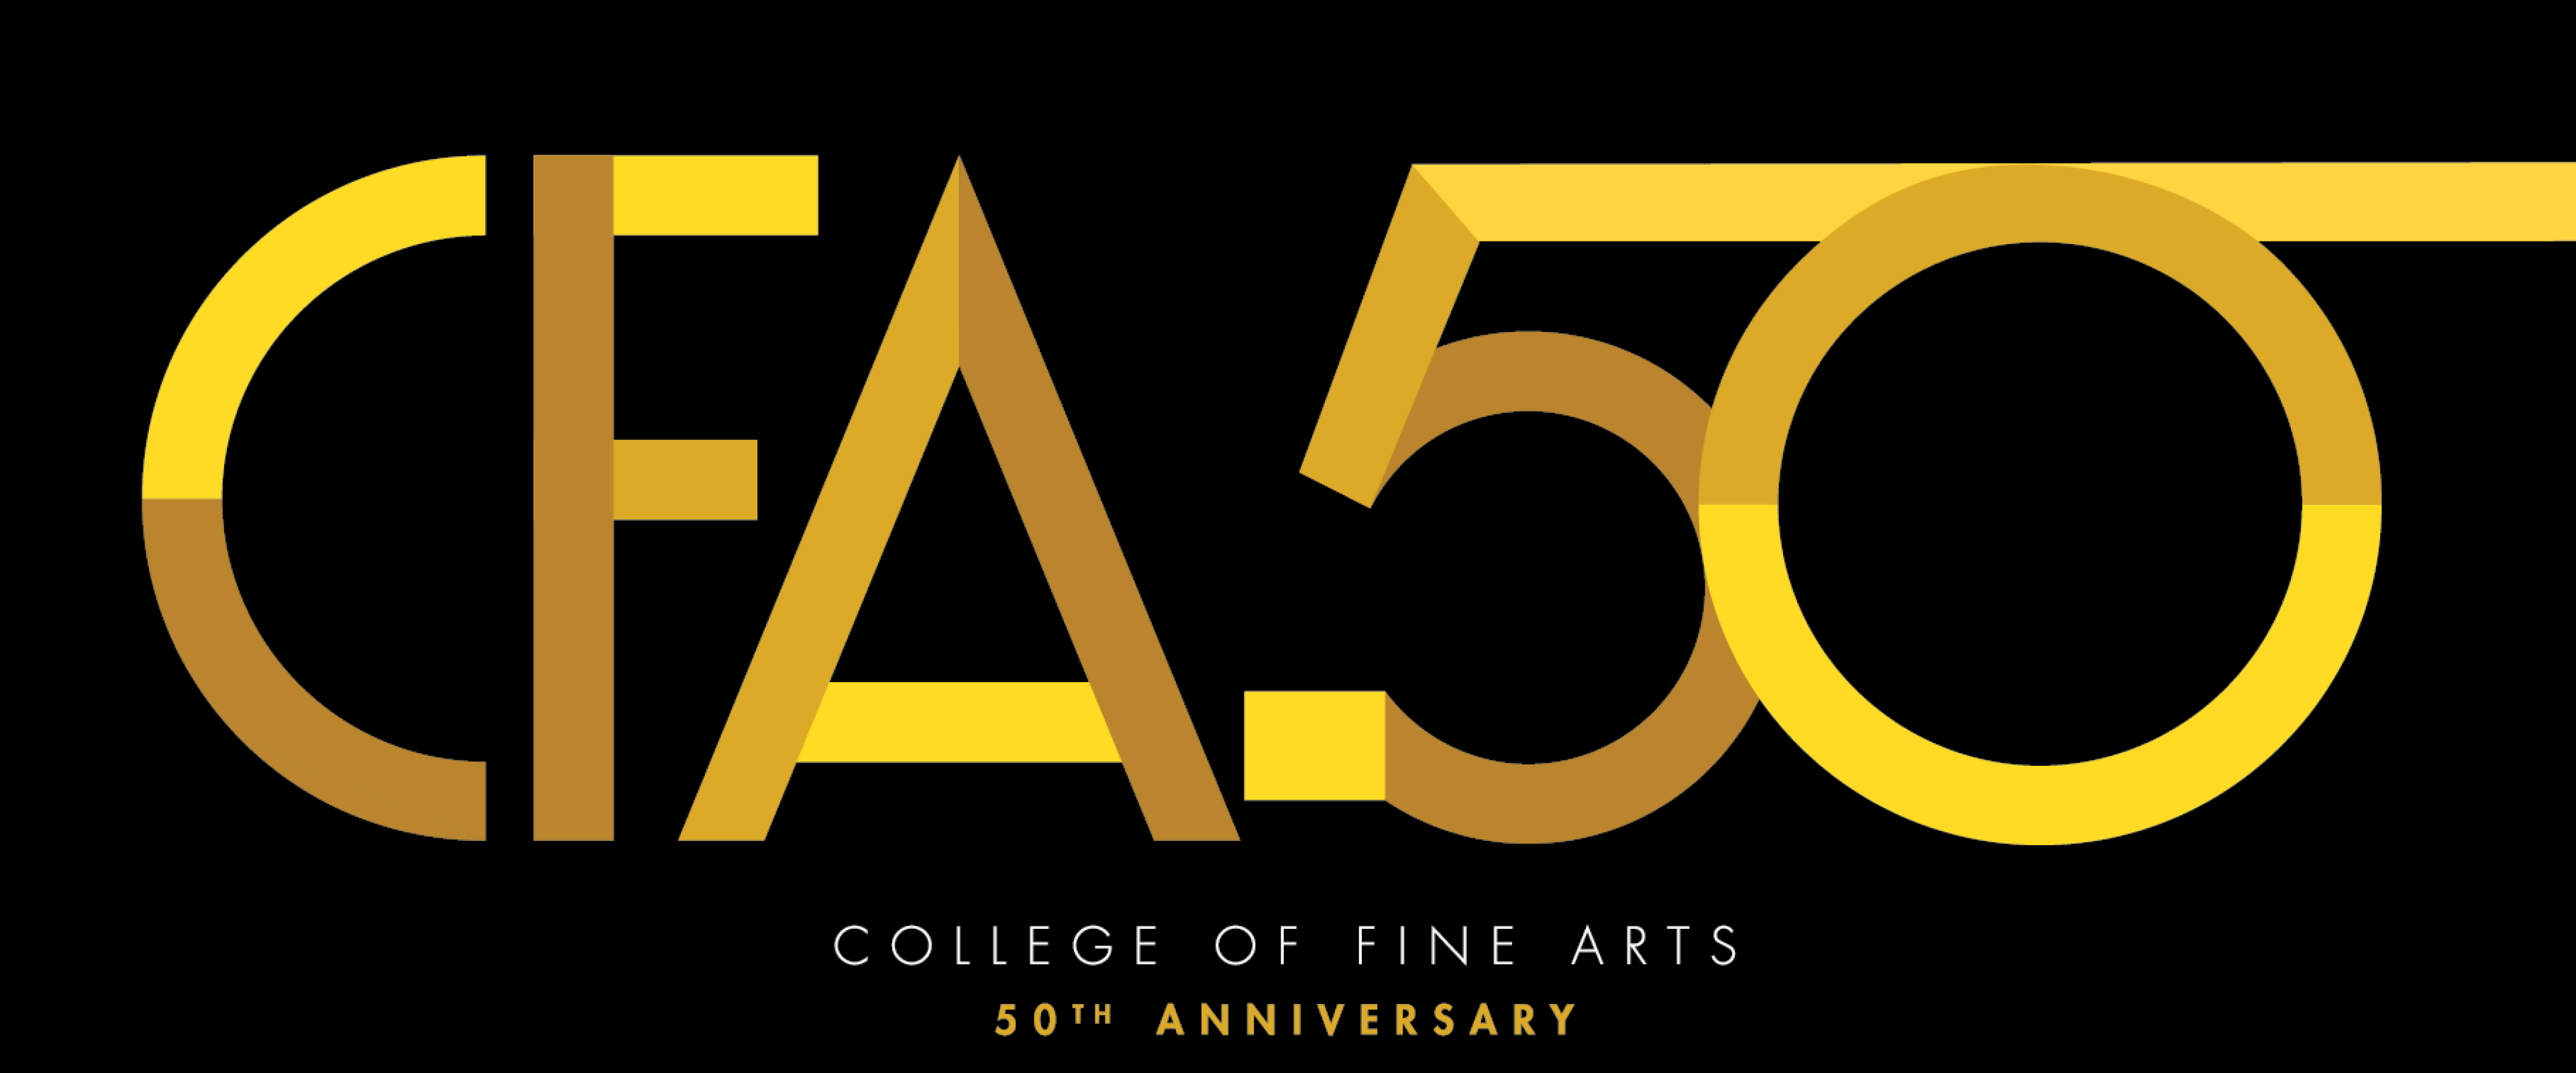 College of Fine Arts 50th Anniversary